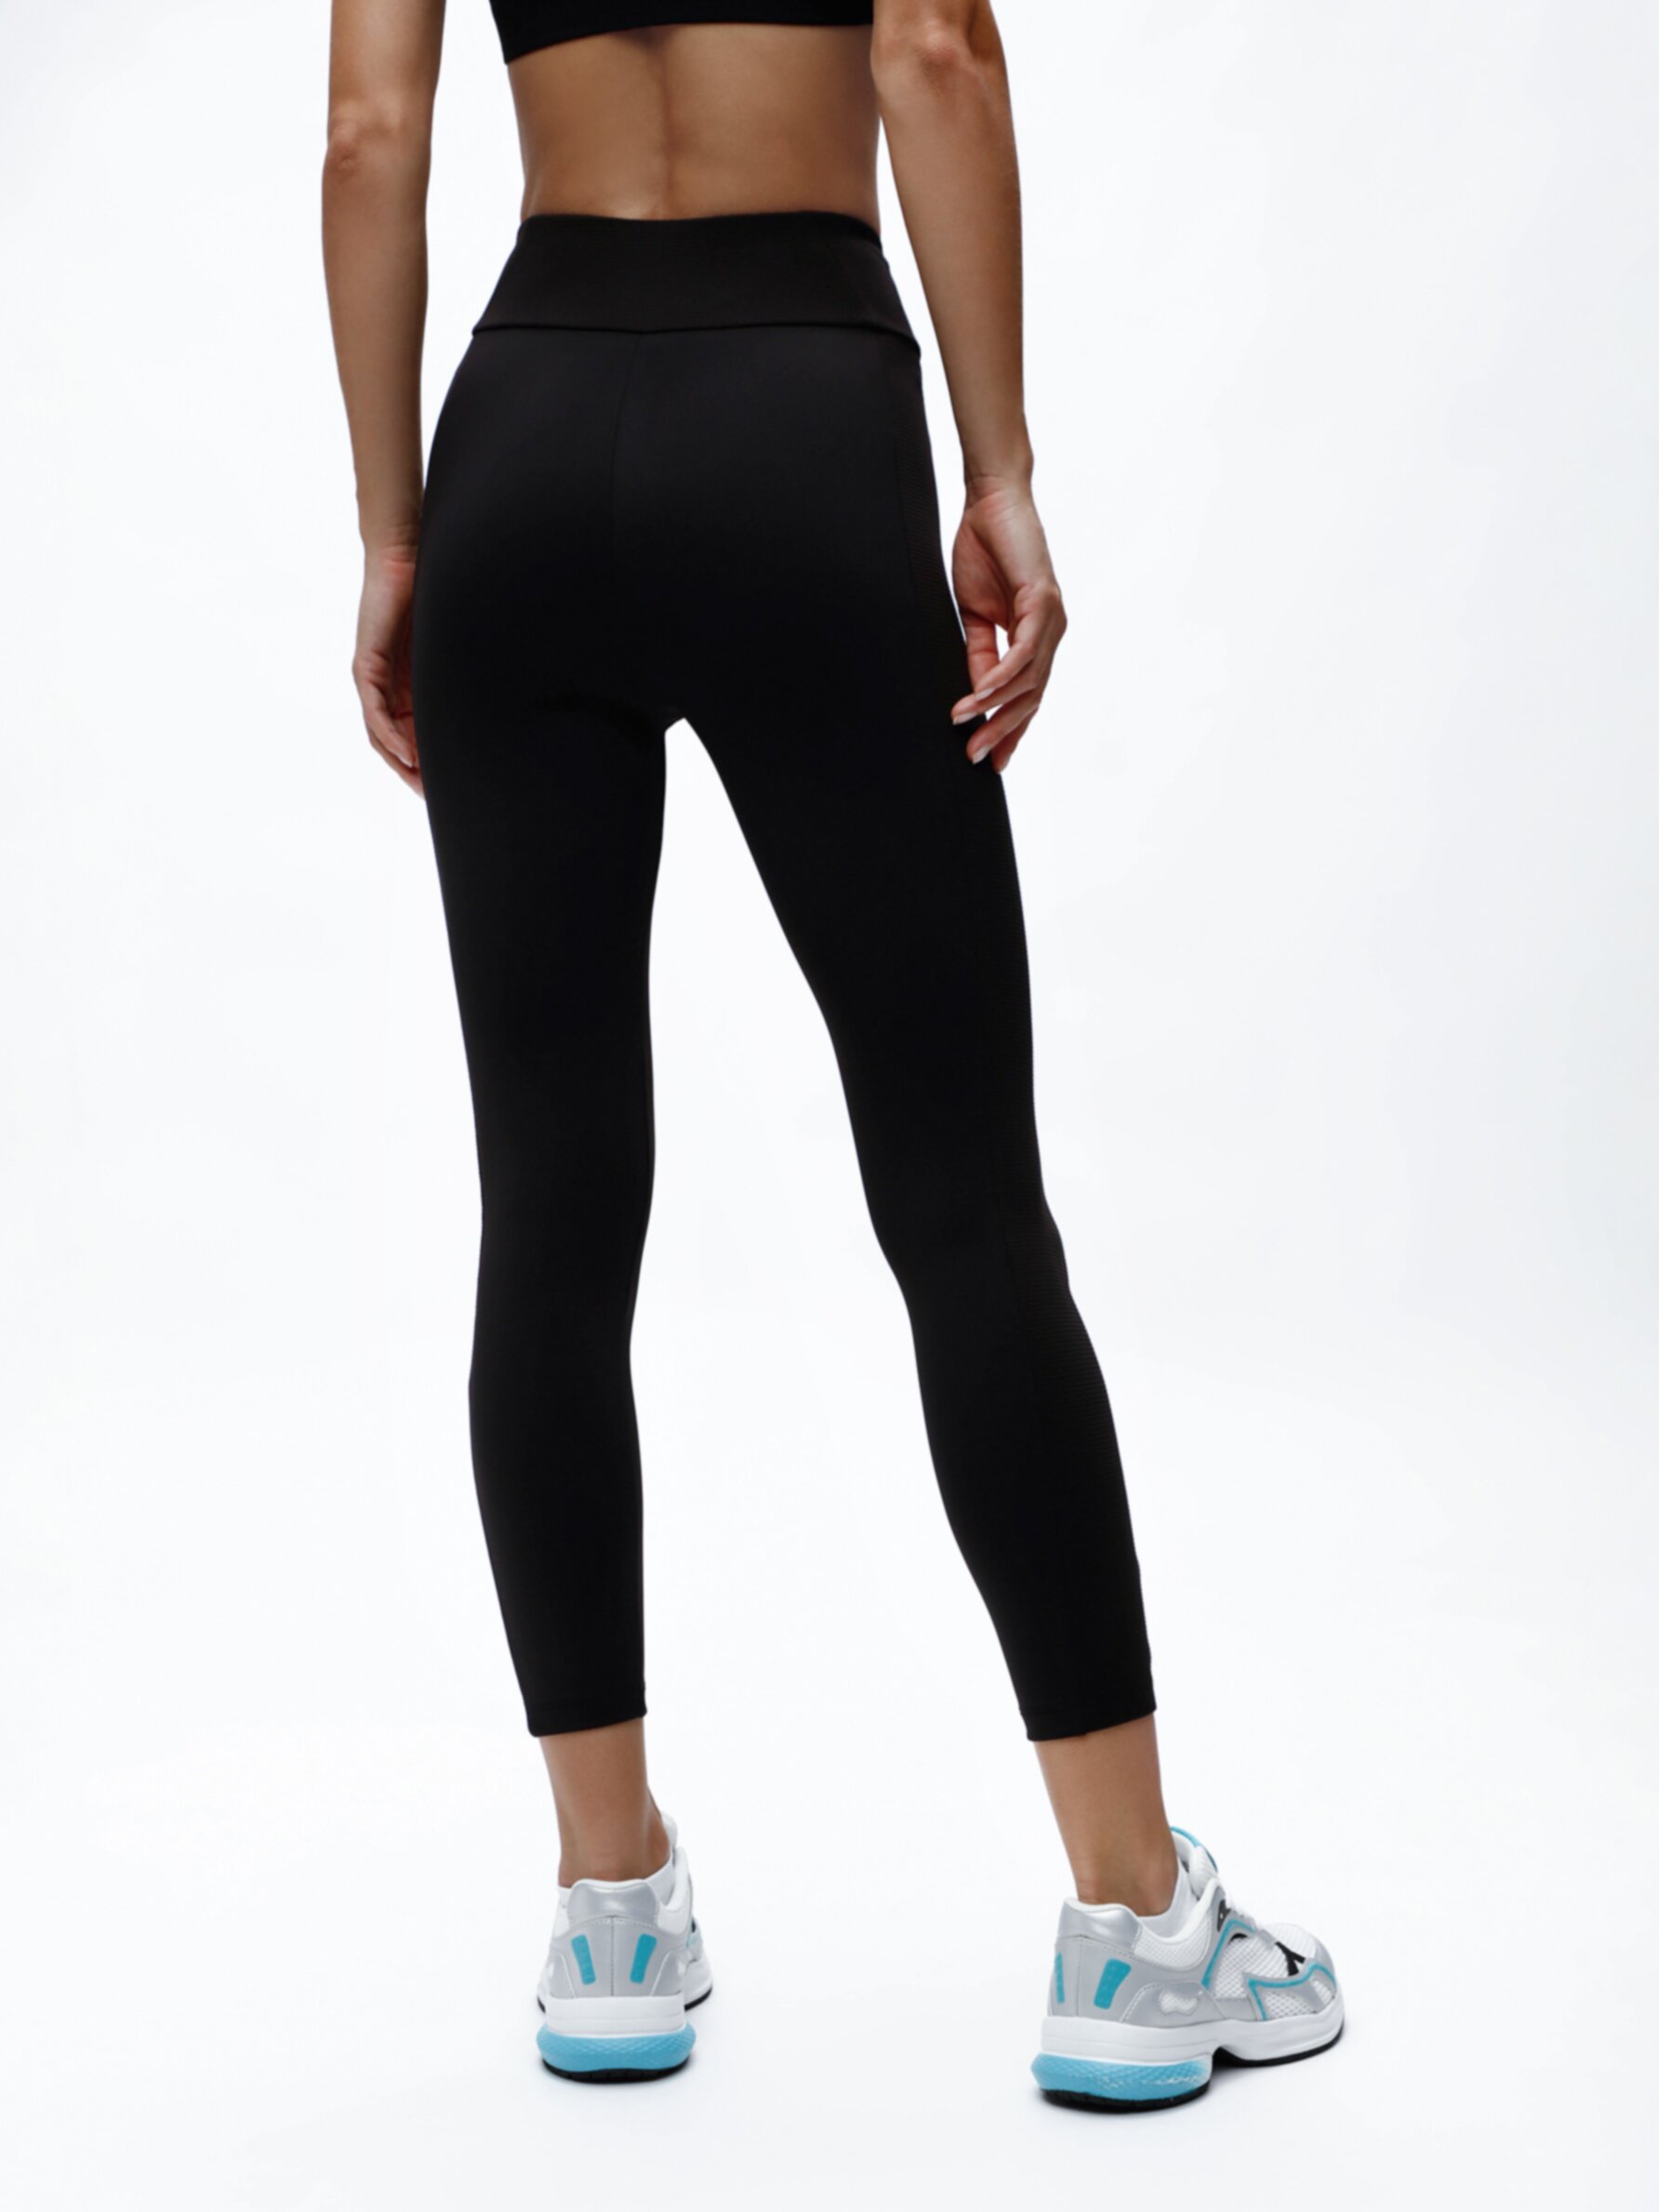 Buy Nike Women's One High-Waisted 7/8 Leggings Black in Dubai, UAE -SSS